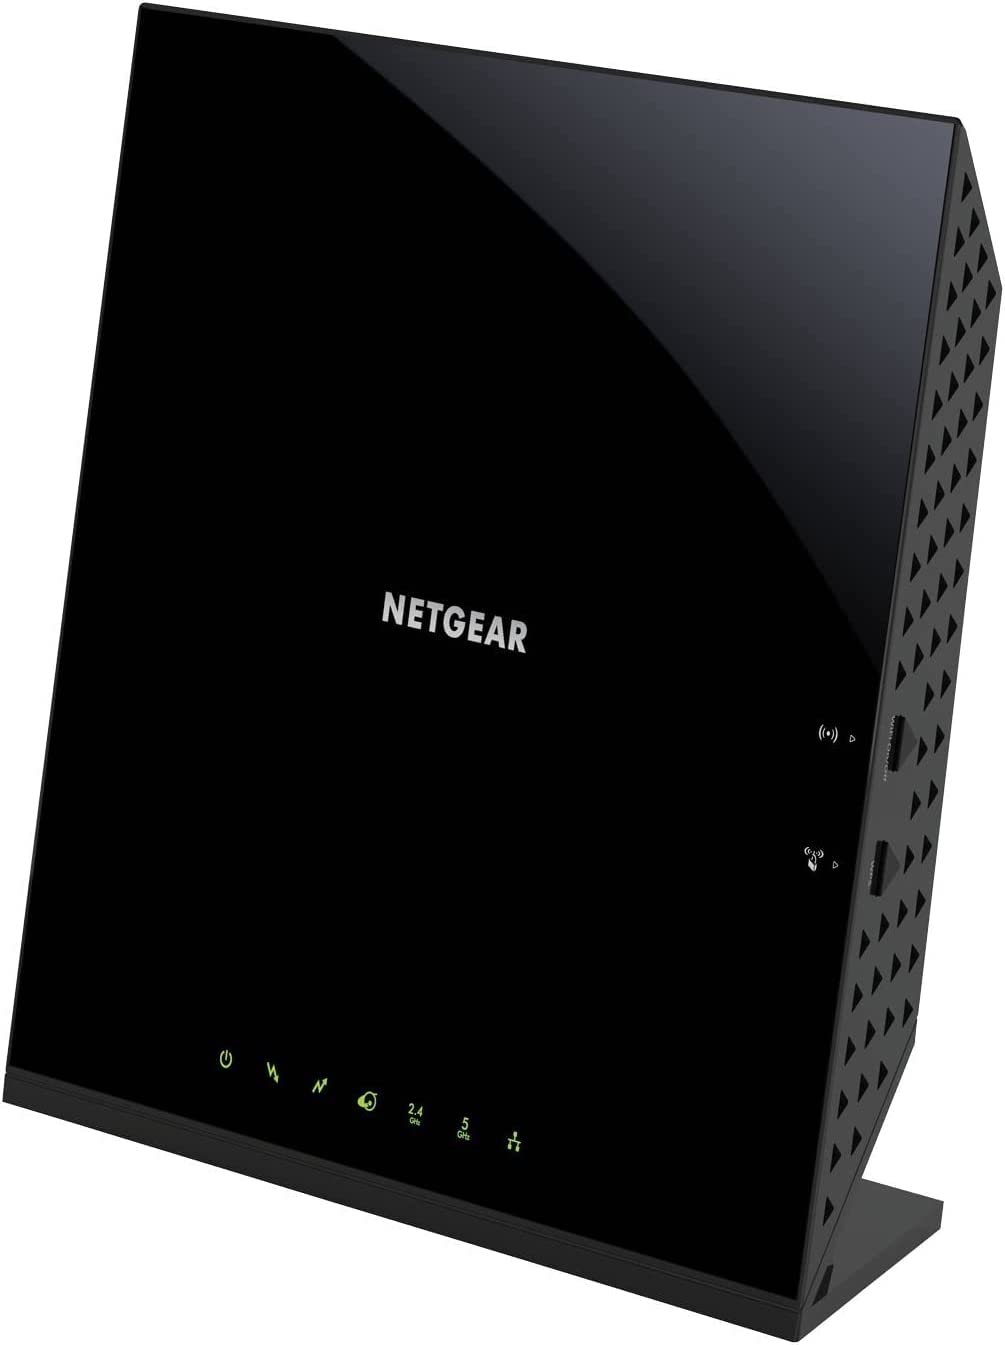 最佳兼容性：Netgear C6250 电缆调制解调器和 Wi-Fi 路由器组合